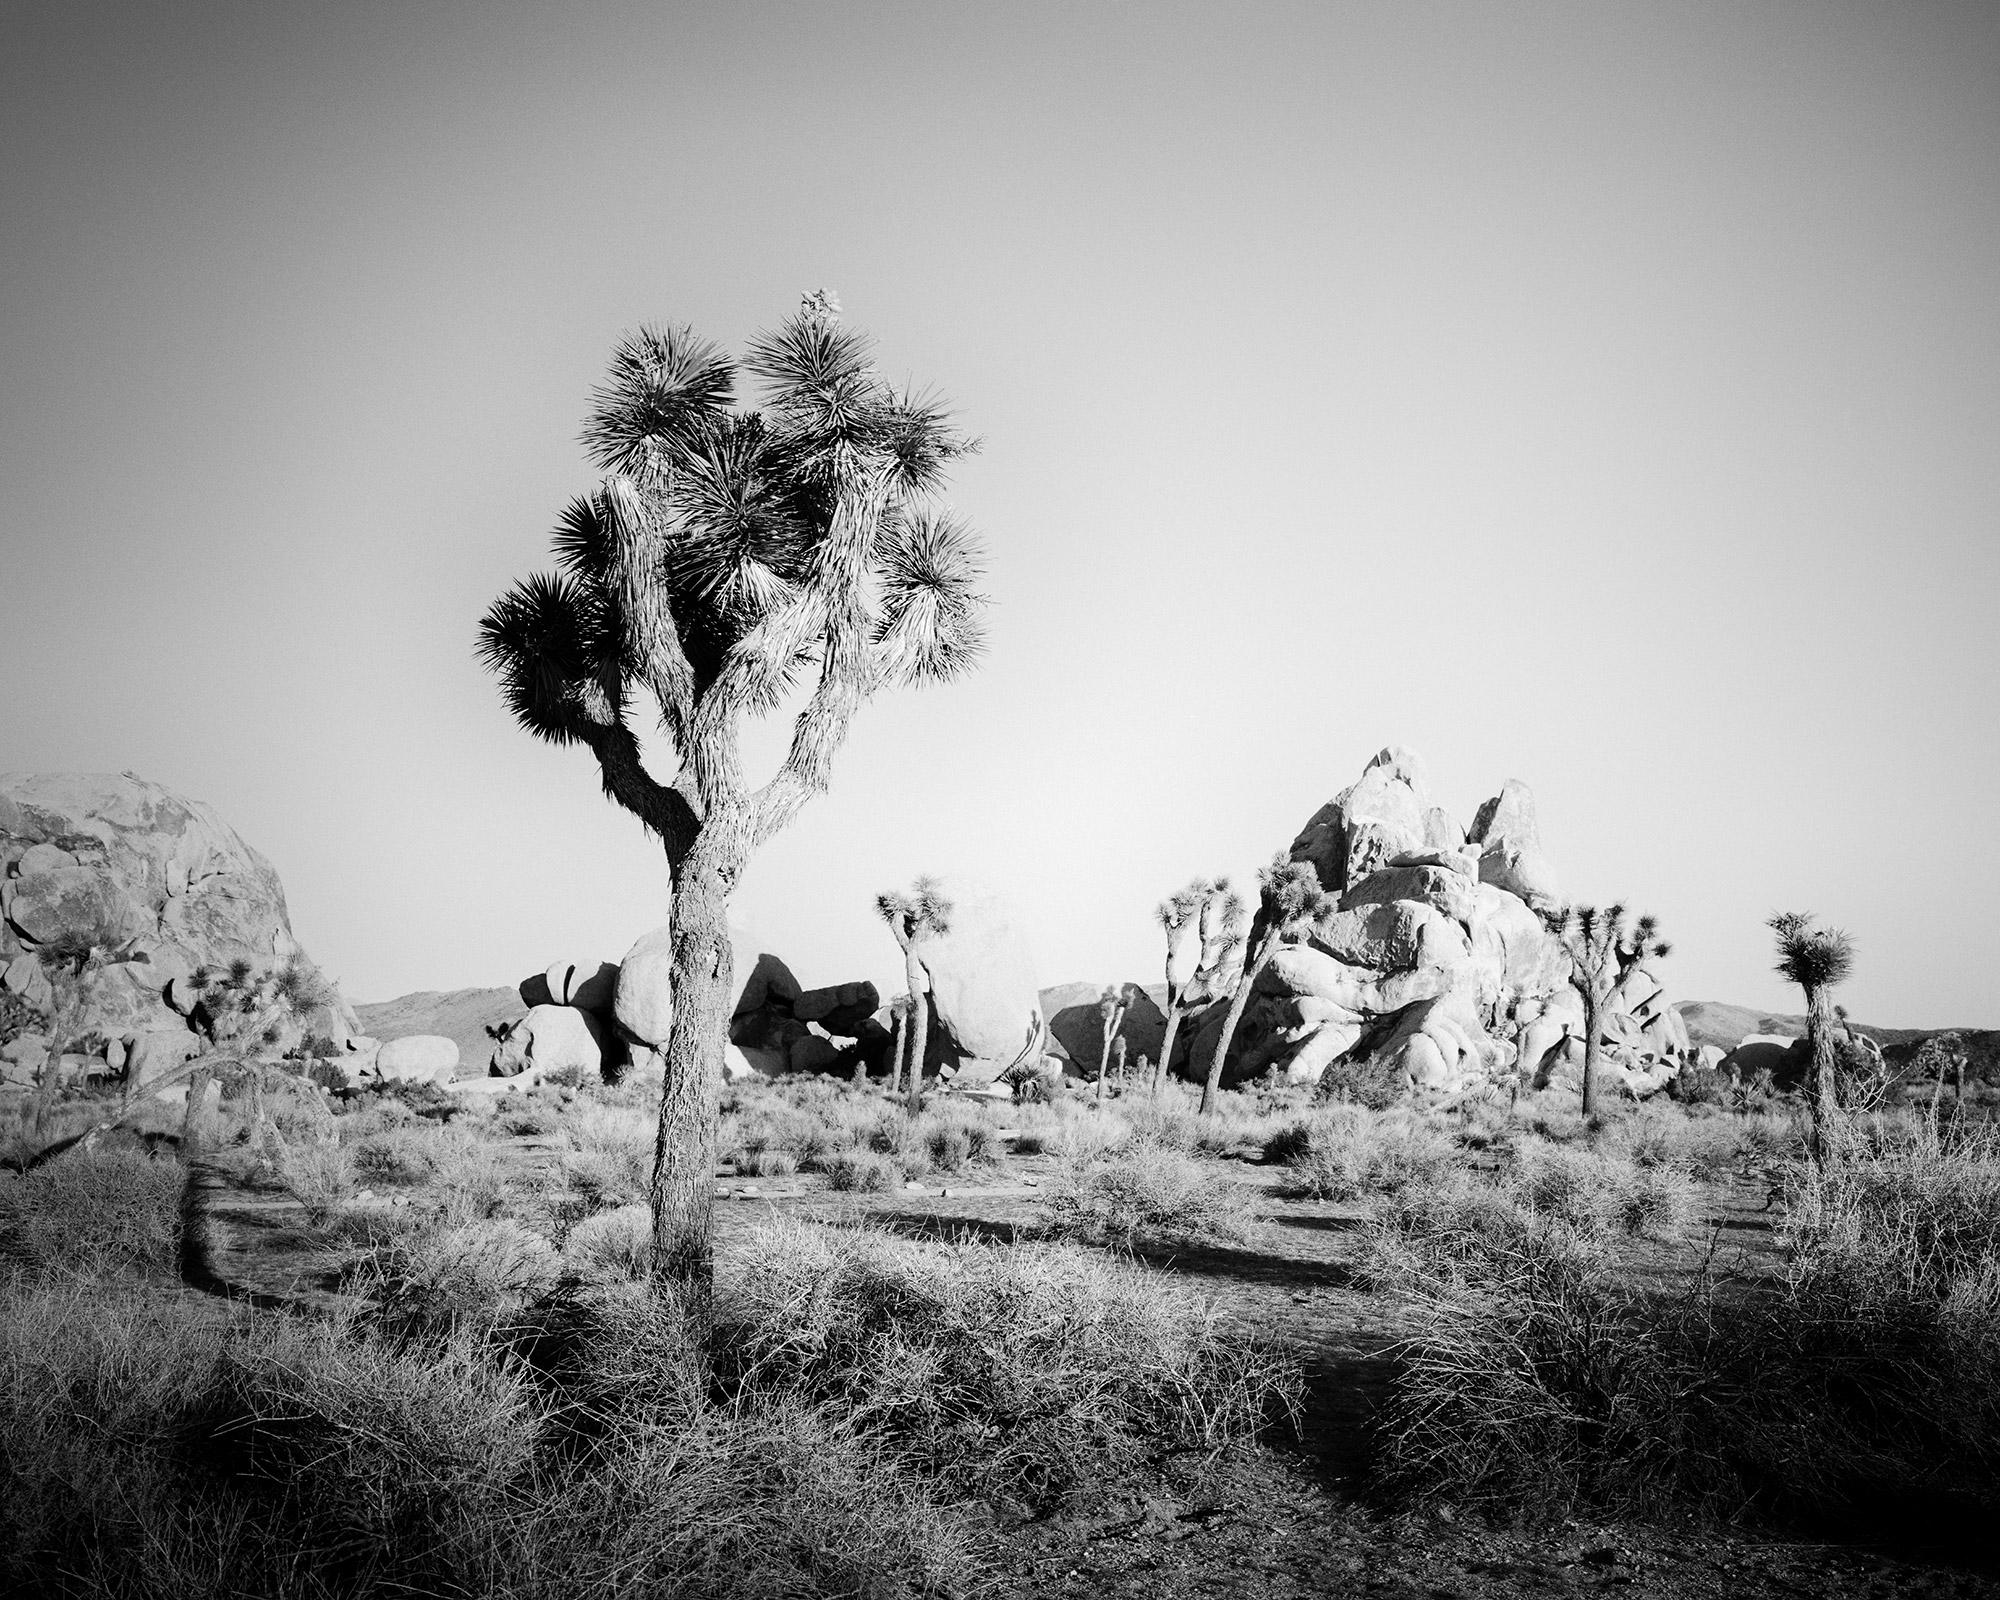 Gerald Berghammer Landscape Photograph – Joshua Tree, Felsen, Wüste, Kalifornien, USA, Schwarz-Weiß-Landschaftsfotografie